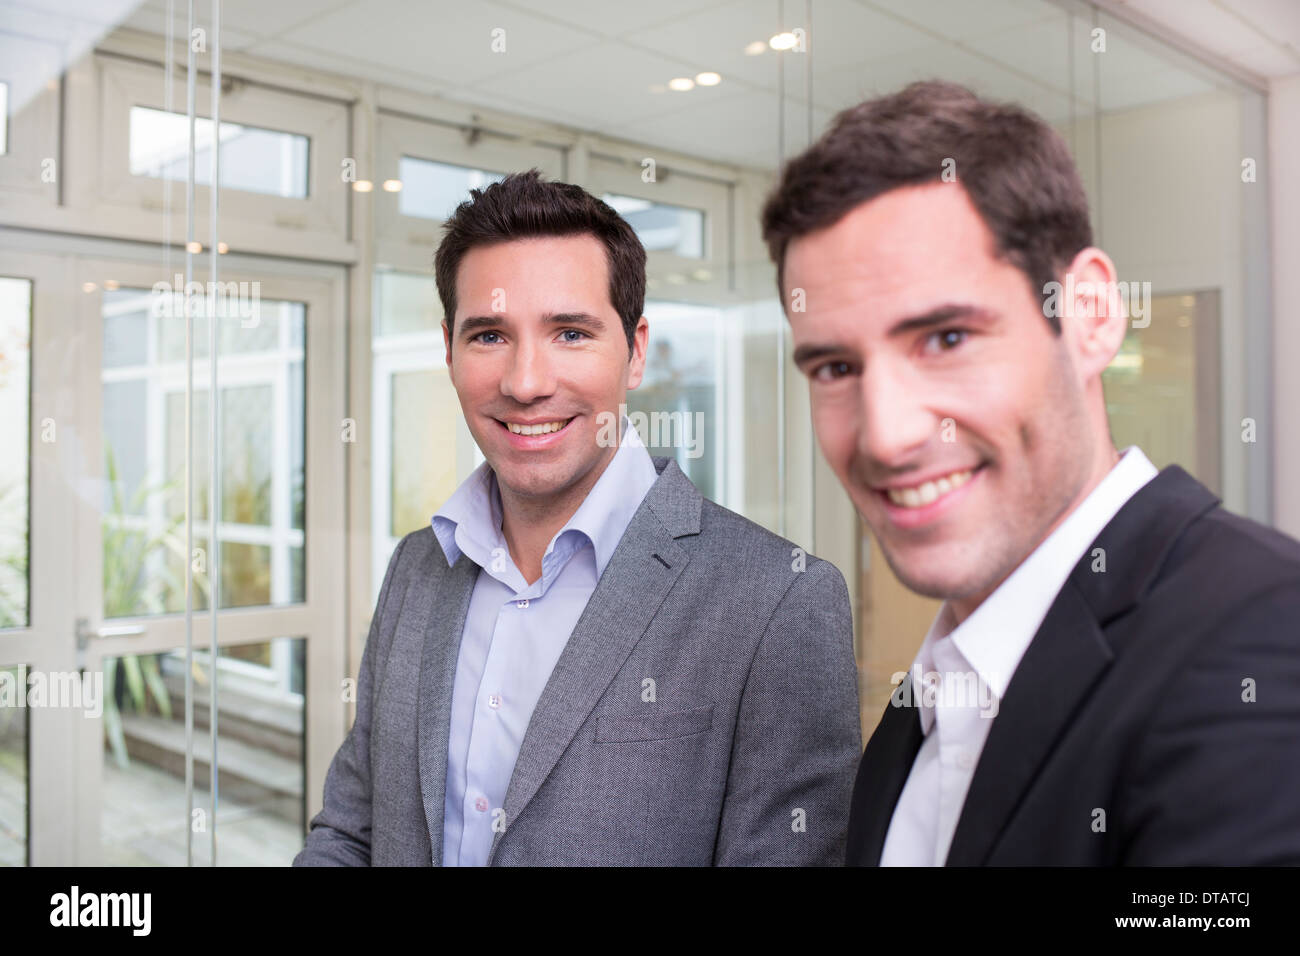 Porträt von zwei Lächeln Geschäftsleute im Büro, auf der Suche nach Kamera Stockfoto